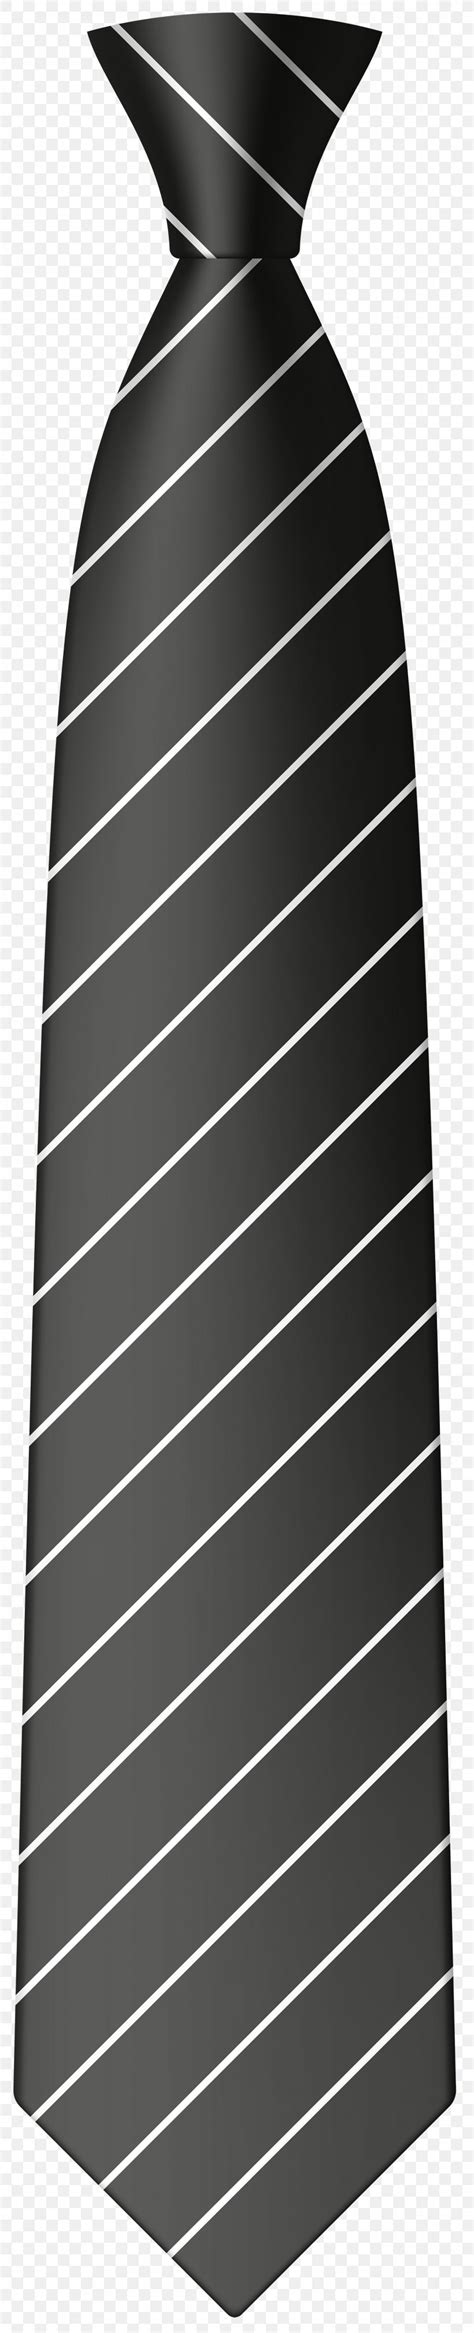 Necktie Clip Art Black And White